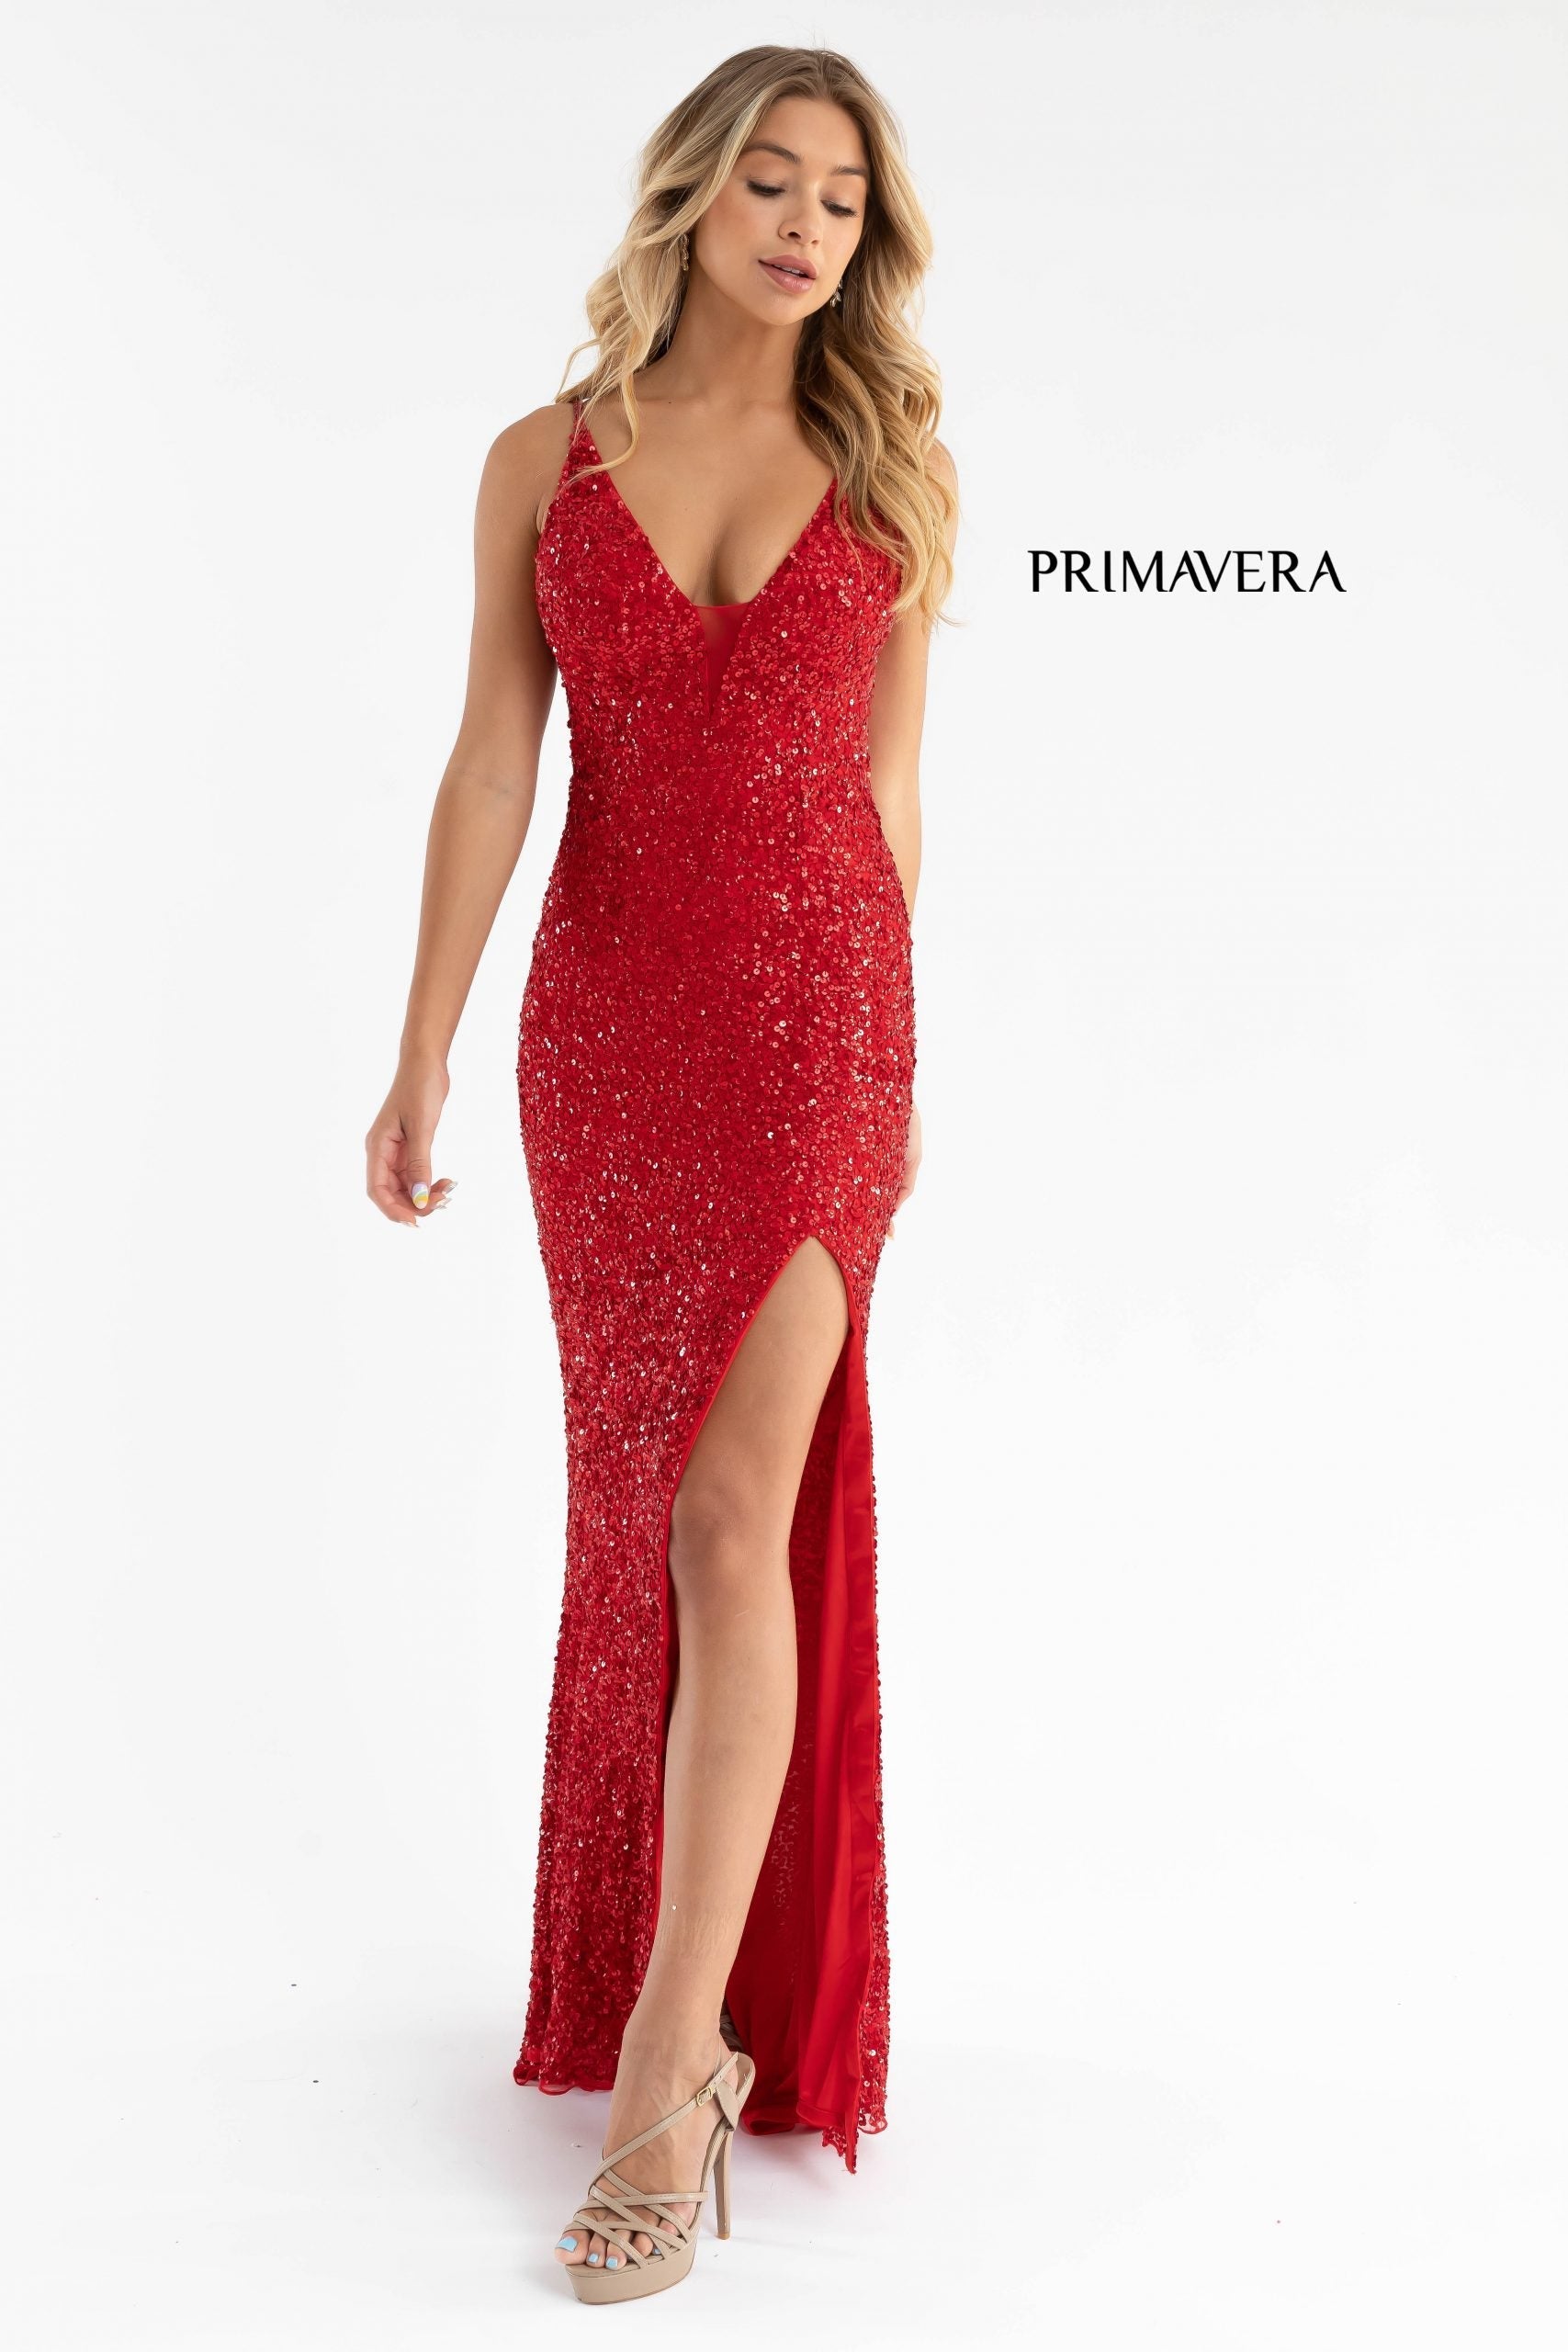 Primavera Couture 3792 Red Prom Dress Size 000 4 8 Strappy